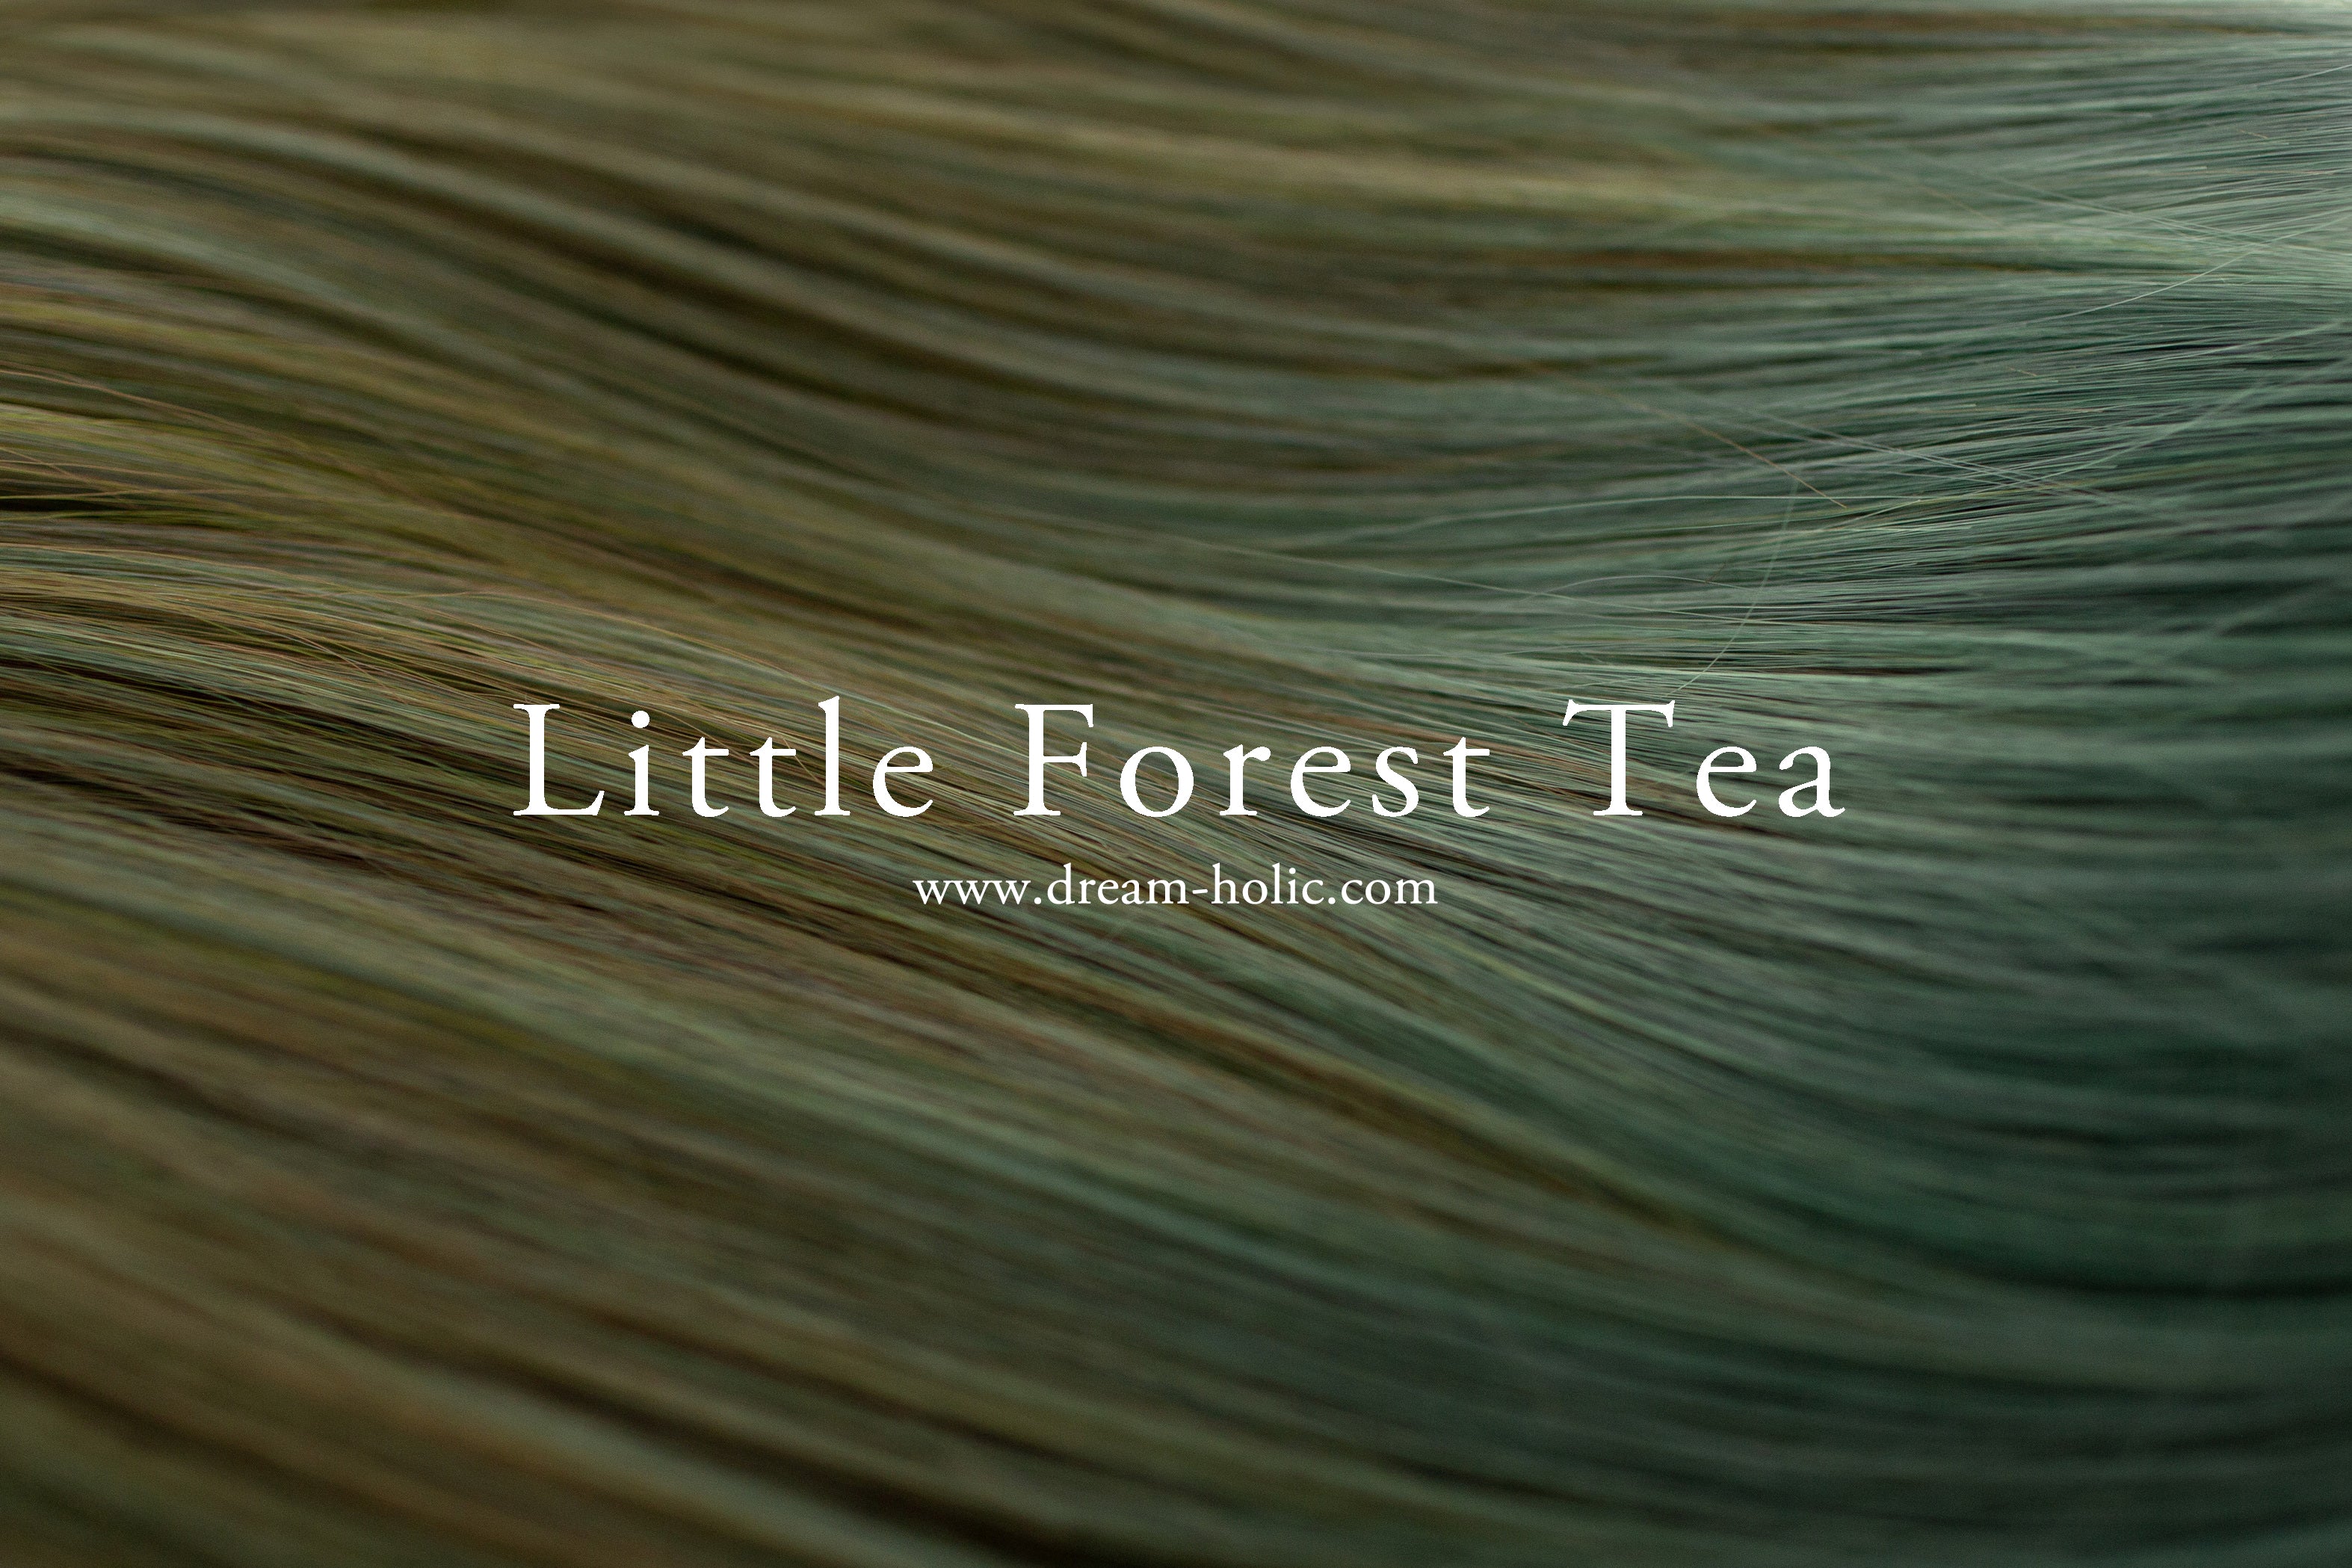 Little Forest Tea